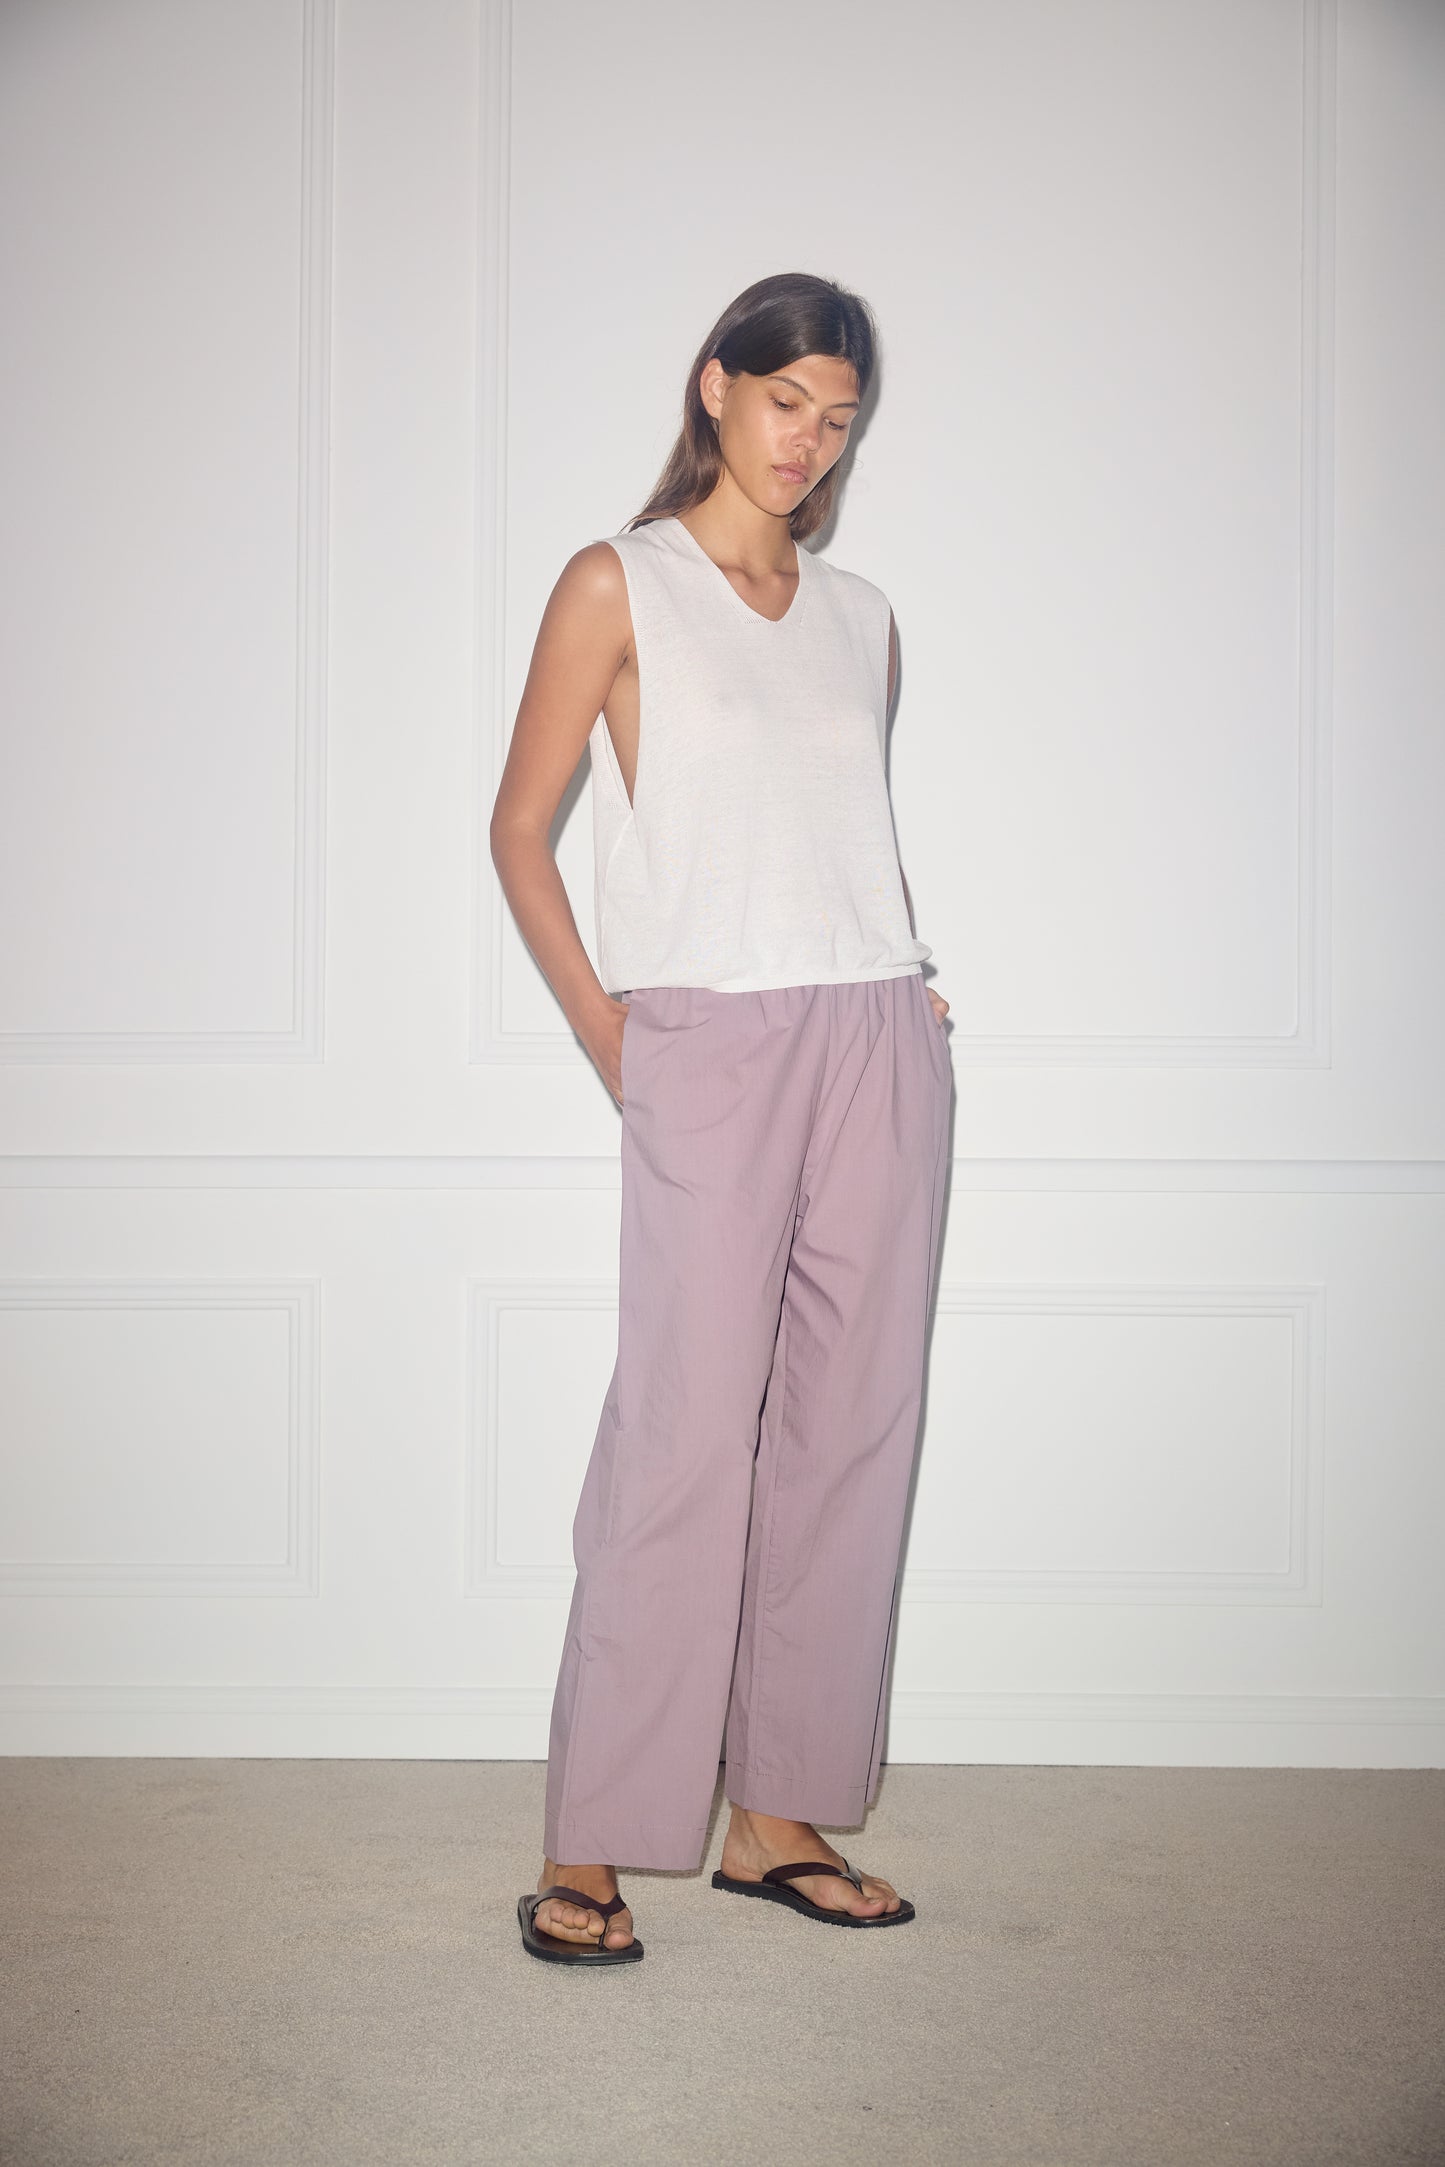 Female model wearing Ease Trouser - Mauve by Deiji Studios against plain background